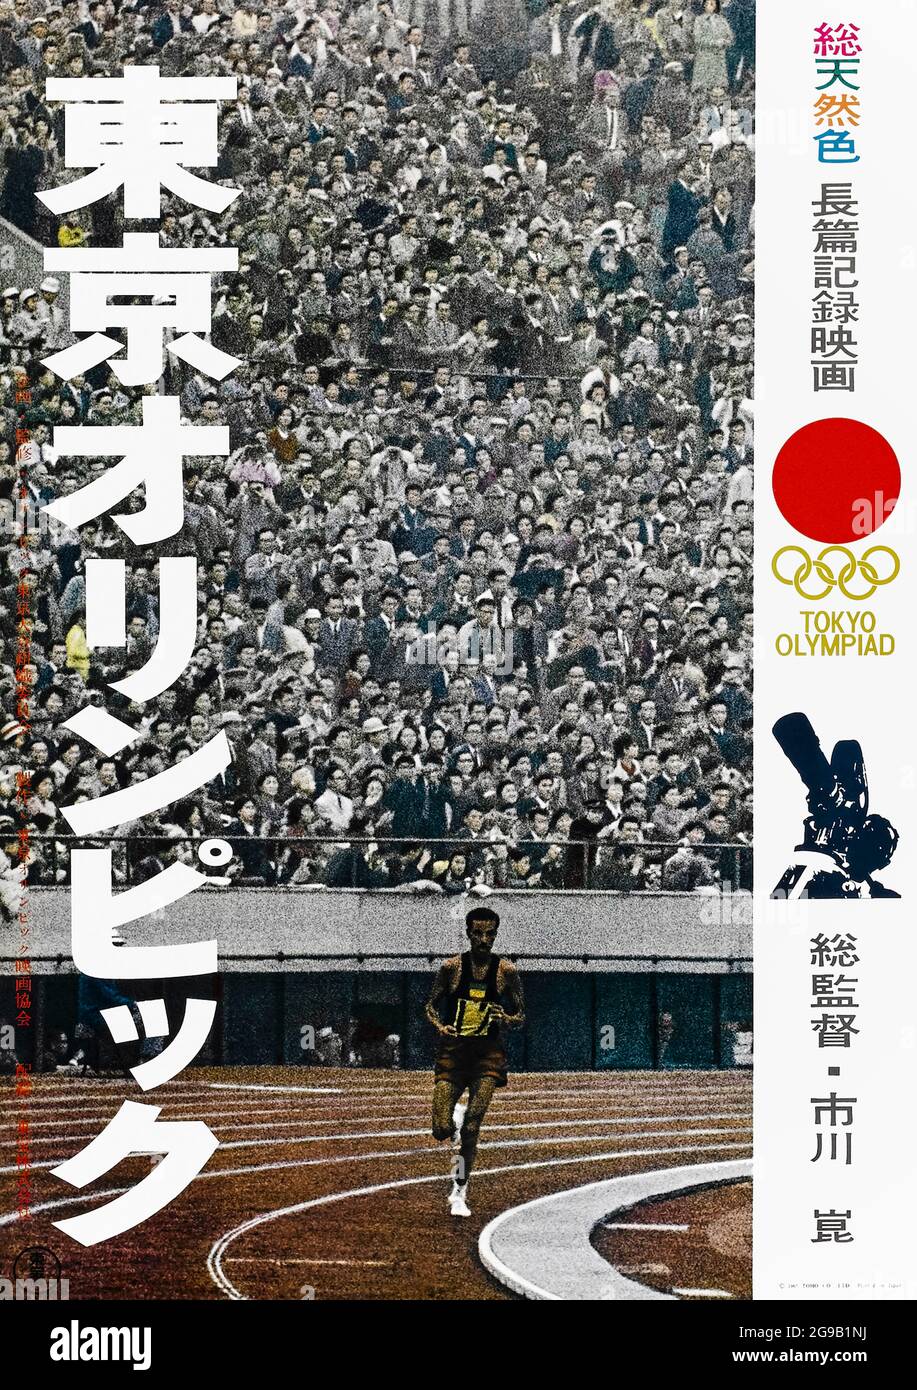 Tokyo Olympiad (1965) regia di Kon Ichikawa con Abebe Bikila, Jack Douglas, Ahmed Issa e l'imperatore Hirohito. Documentario giapponese sulle Olimpiadi estive del 1964 che si tengono a Tokyo, incentrato sull'atmosfera dell'evento e dei suoi partecipanti. Foto Stock